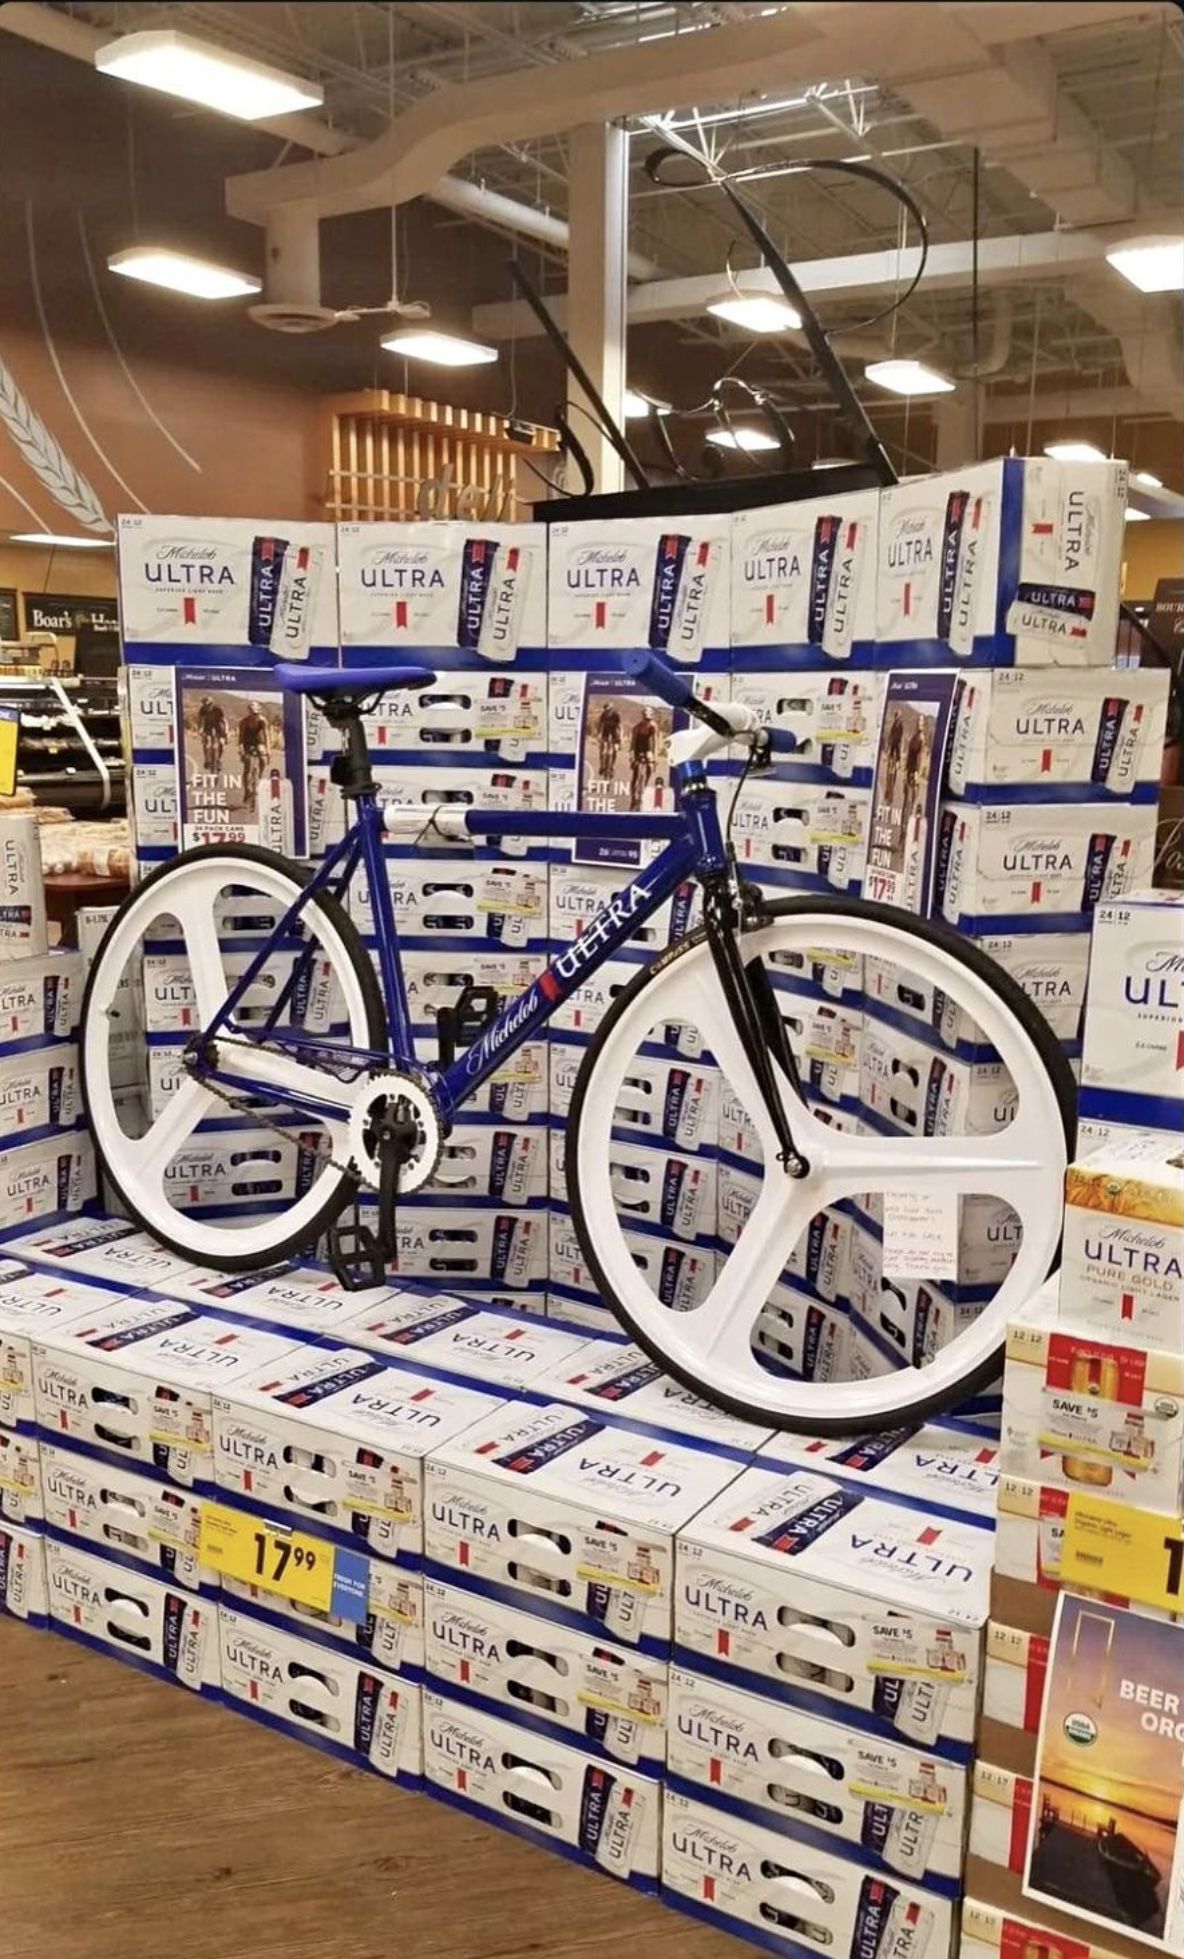 Ultra Michelob Bike